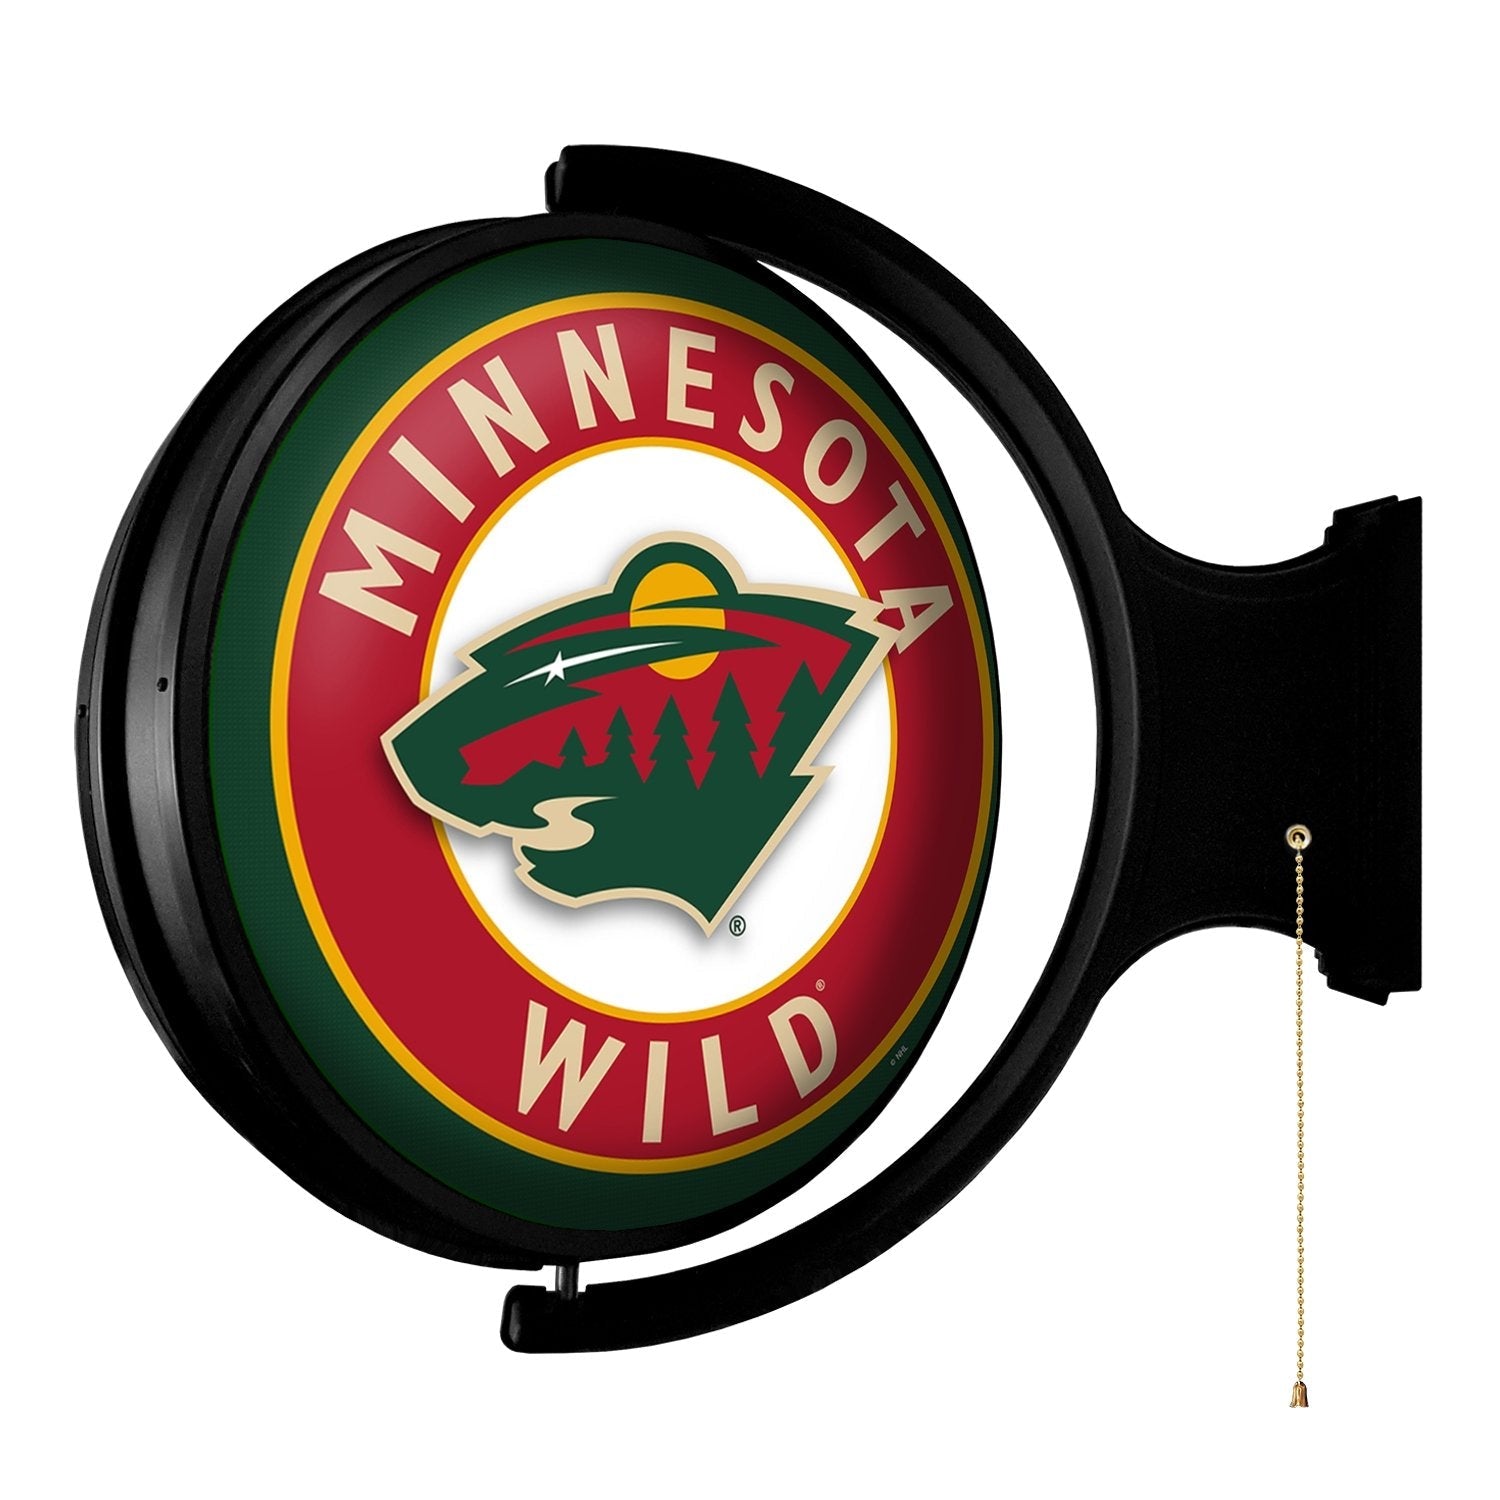 Minnesota Wild - Fan Shop